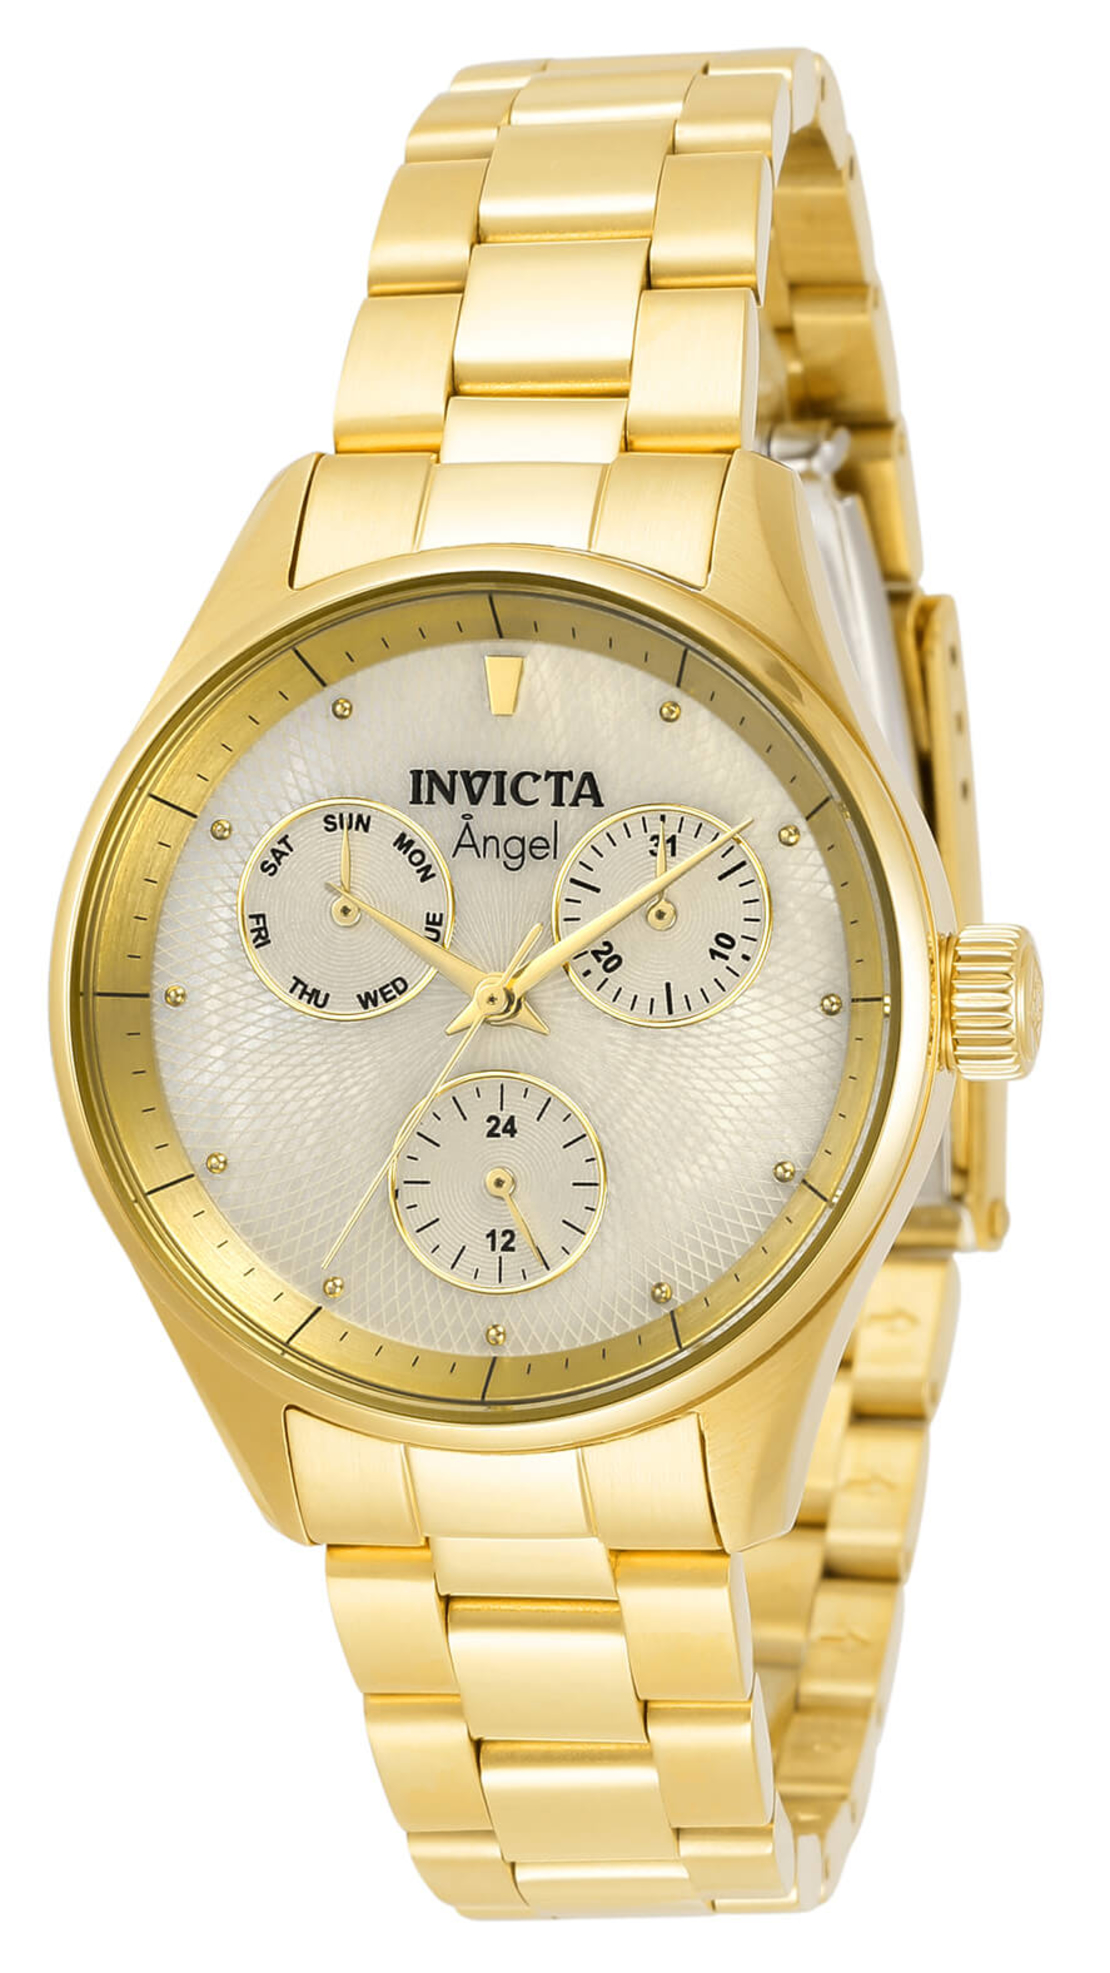 שעון Invicta Angel לאישה דגם 31364